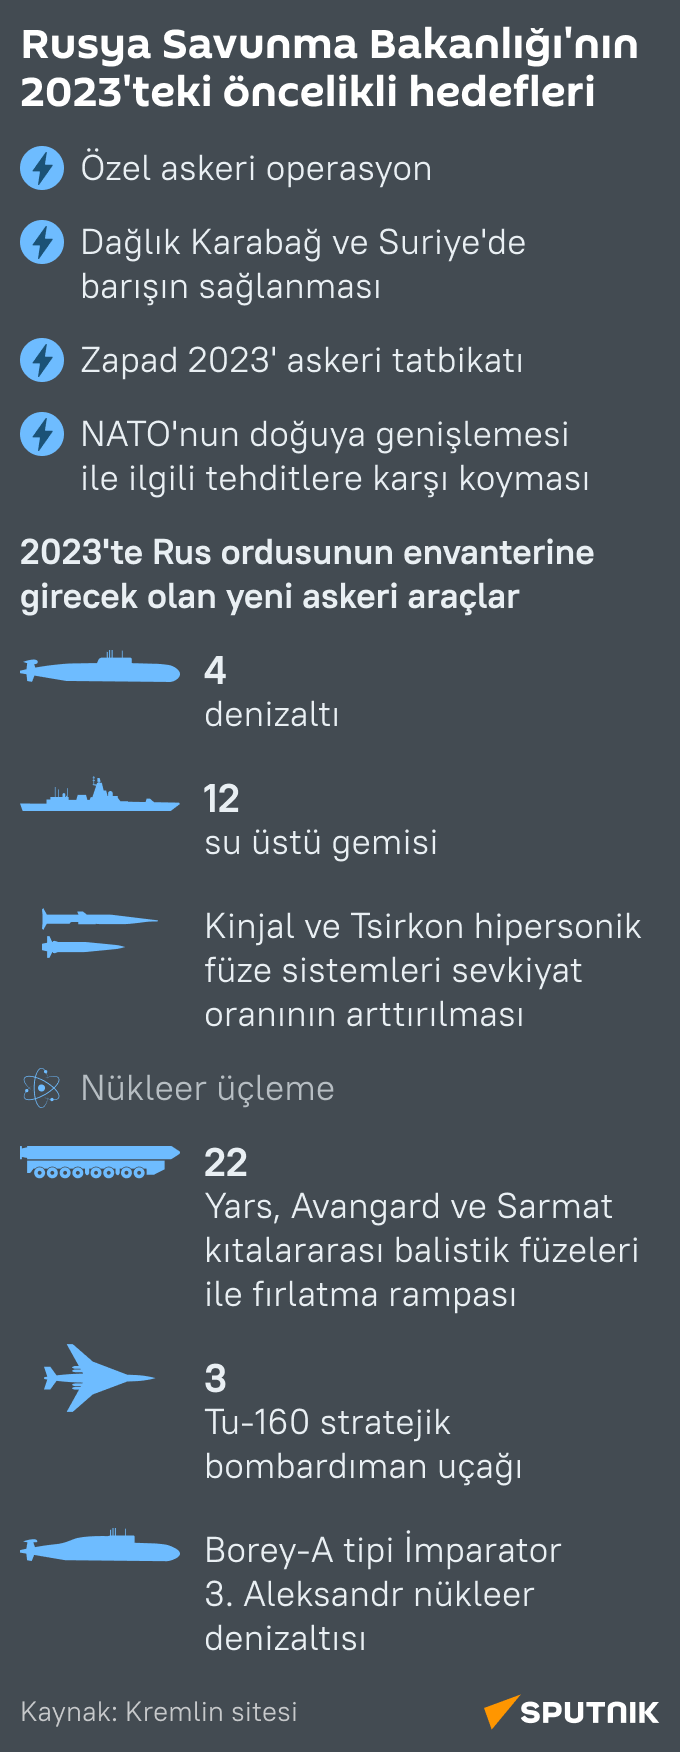 İnfografik Rusya Savunma Bakanlığı’nın 2023’teki öncelikli hedefleri  - Sputnik Türkiye